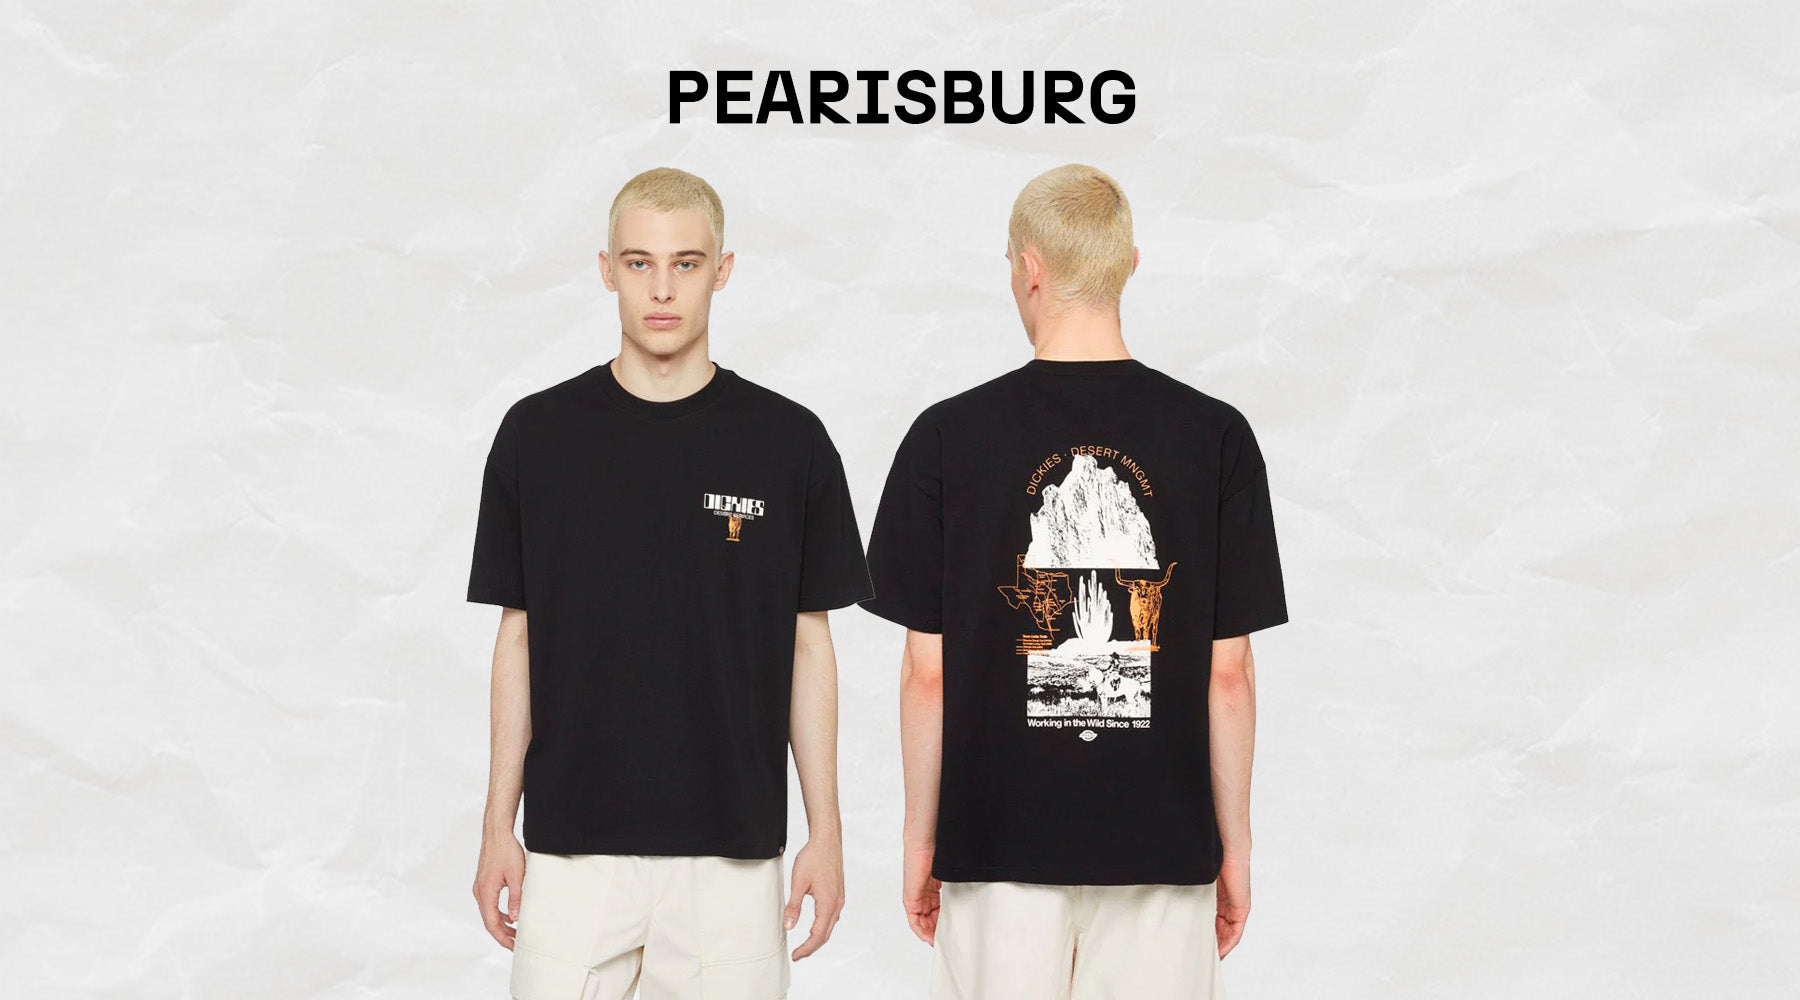 t-shirt dickies pearisburg